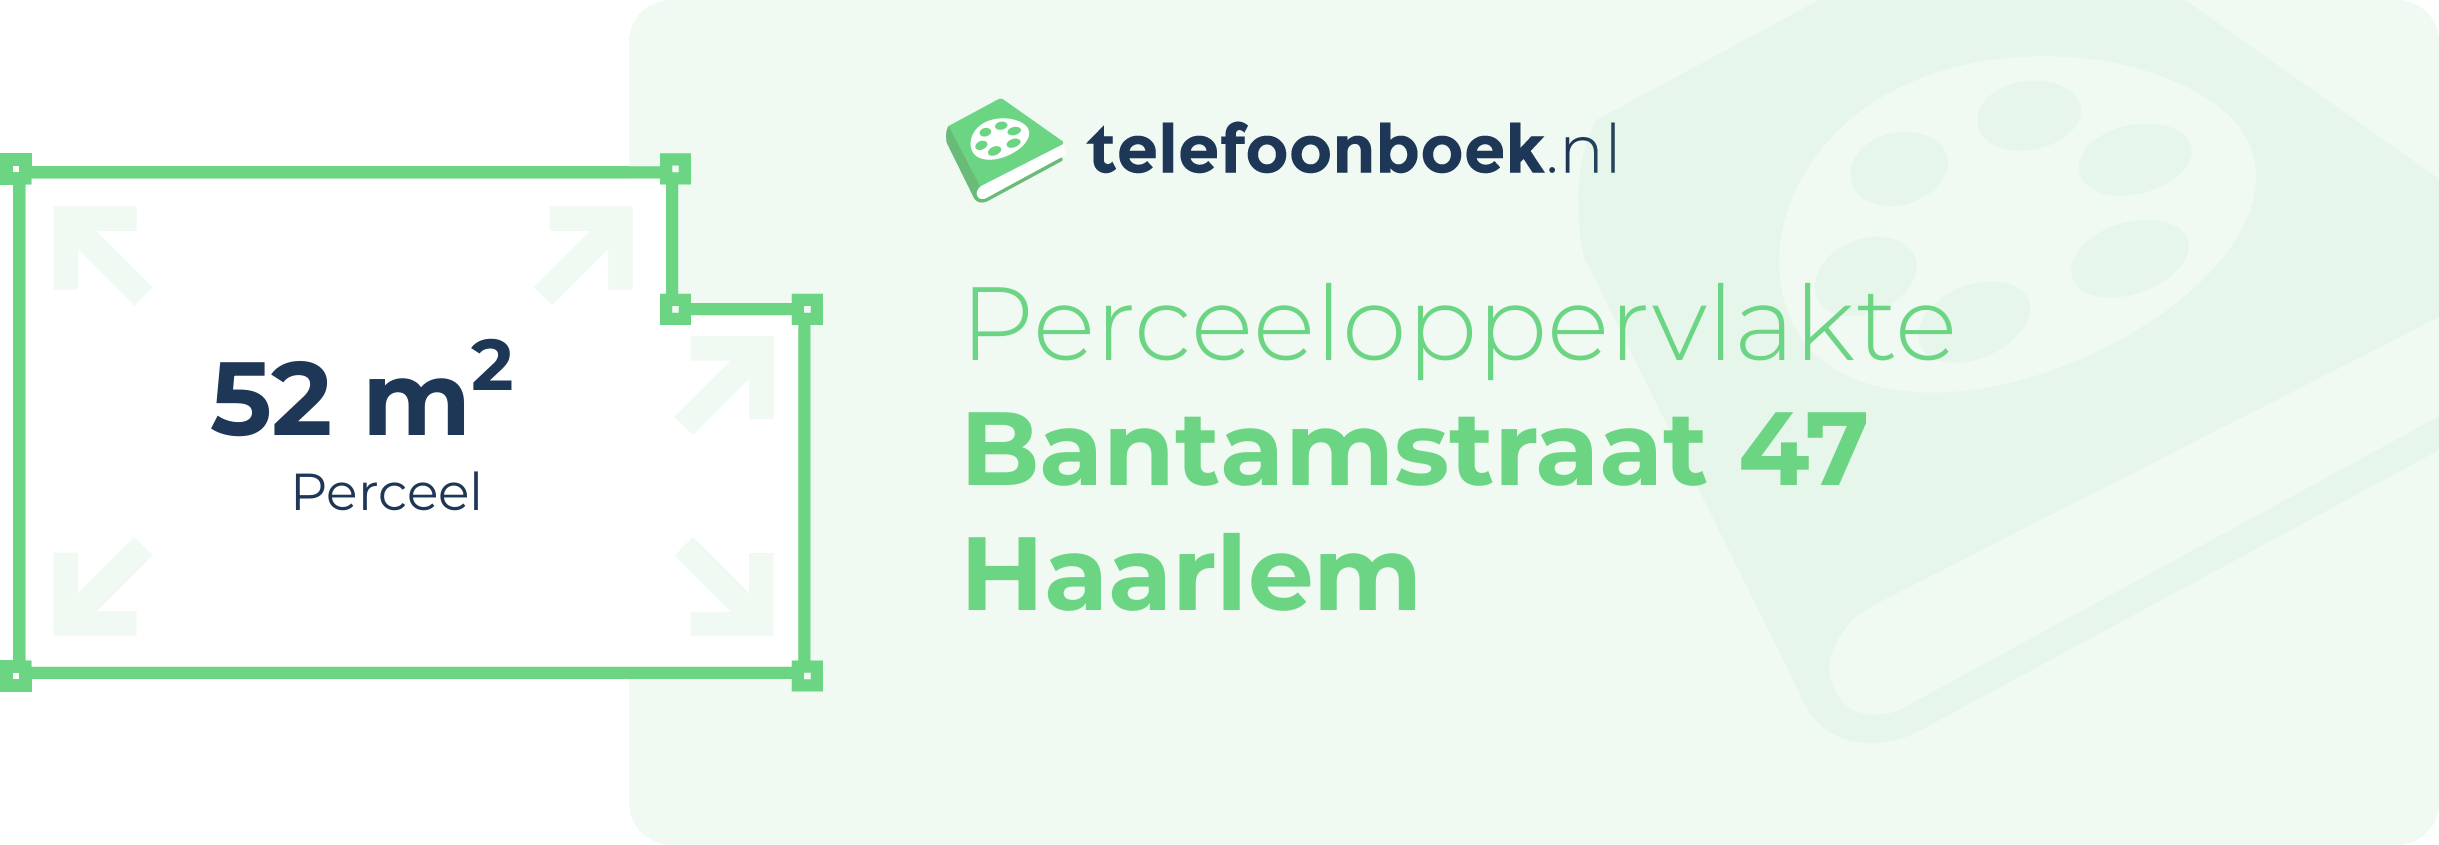 Perceeloppervlakte Bantamstraat 47 Haarlem